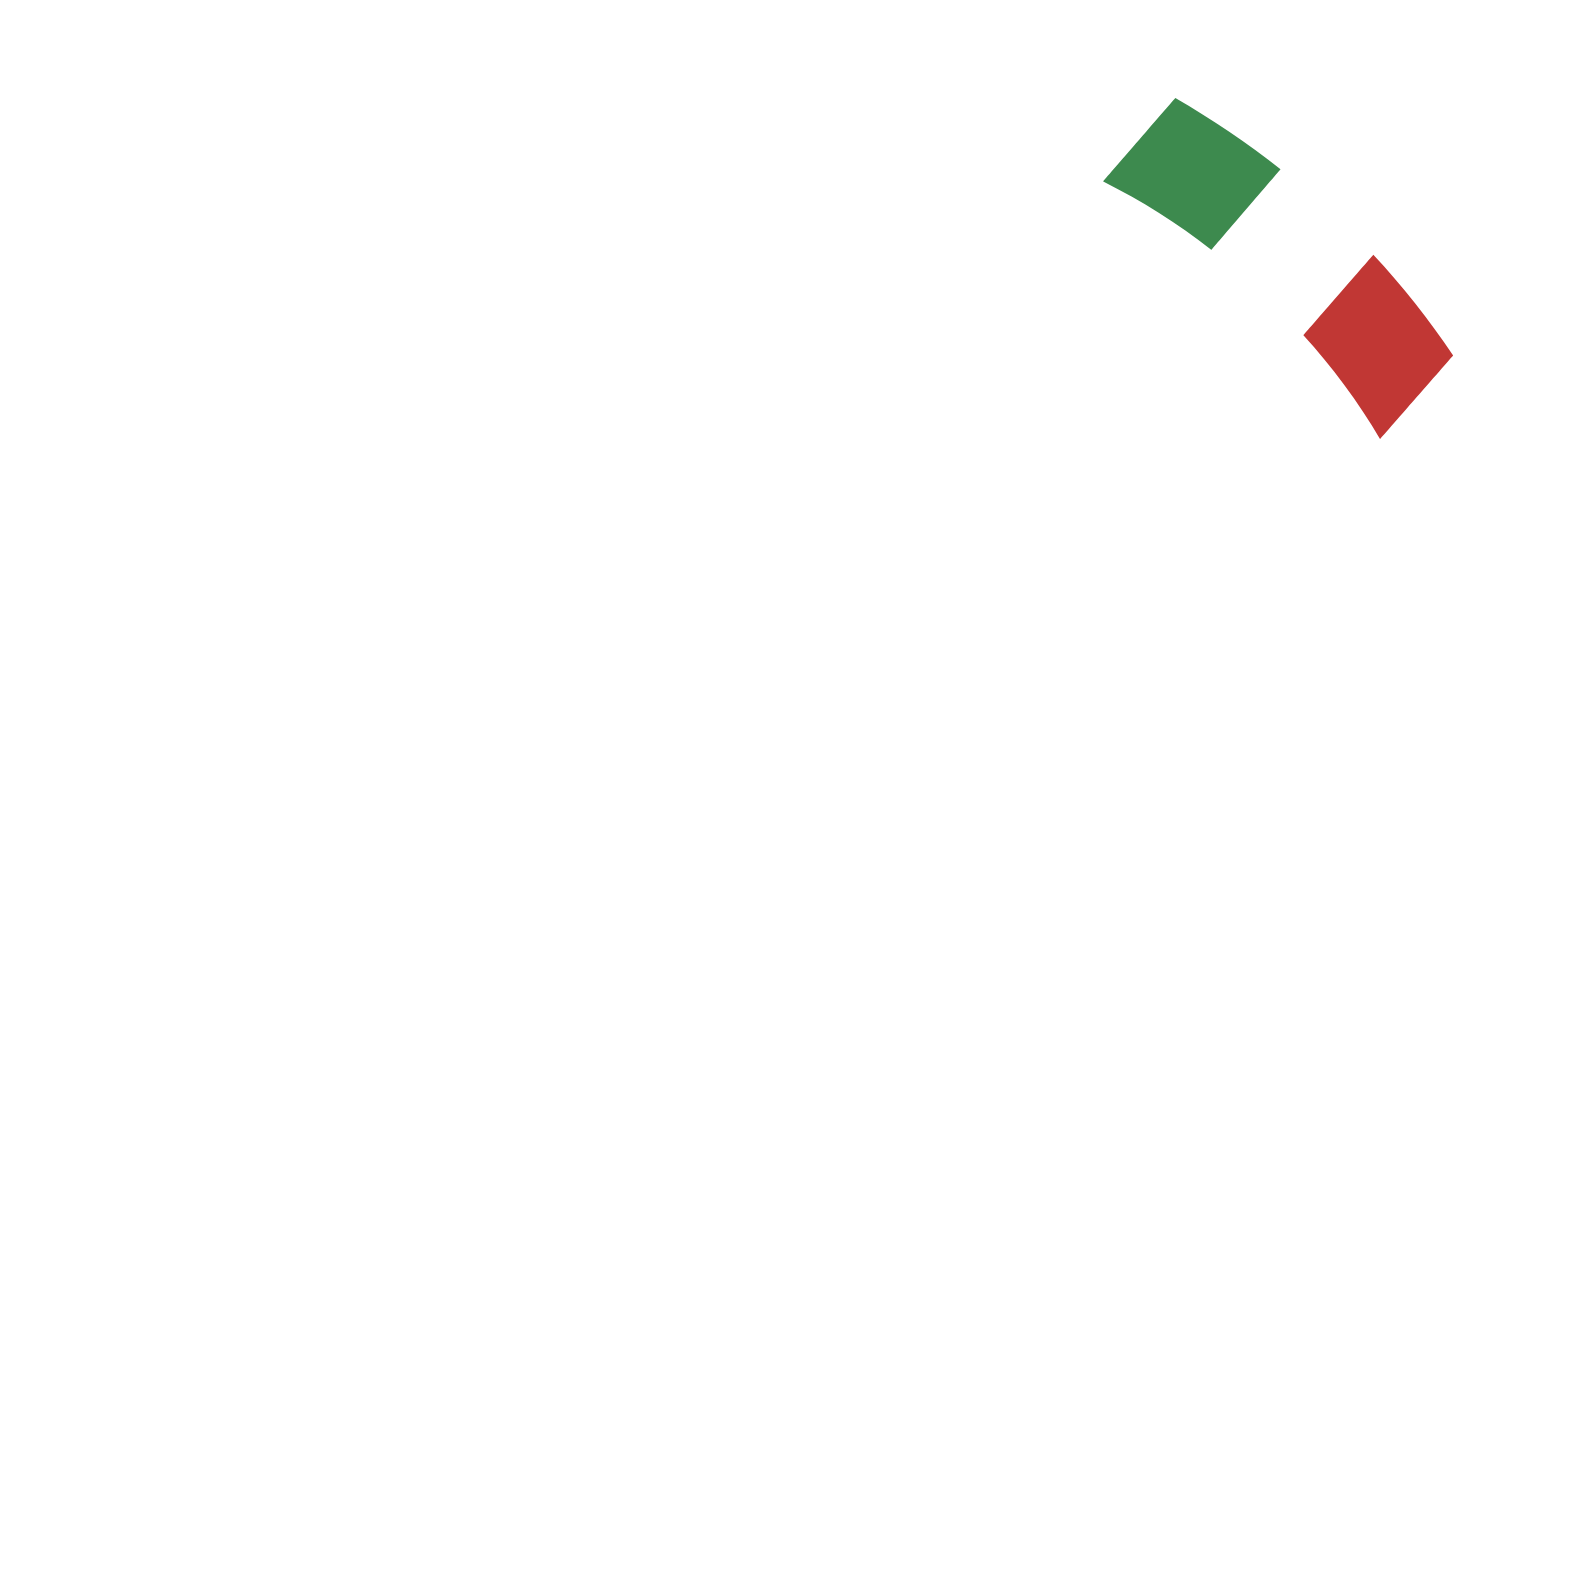 Technoprobe logo pour fonds sombres (PNG transparent)